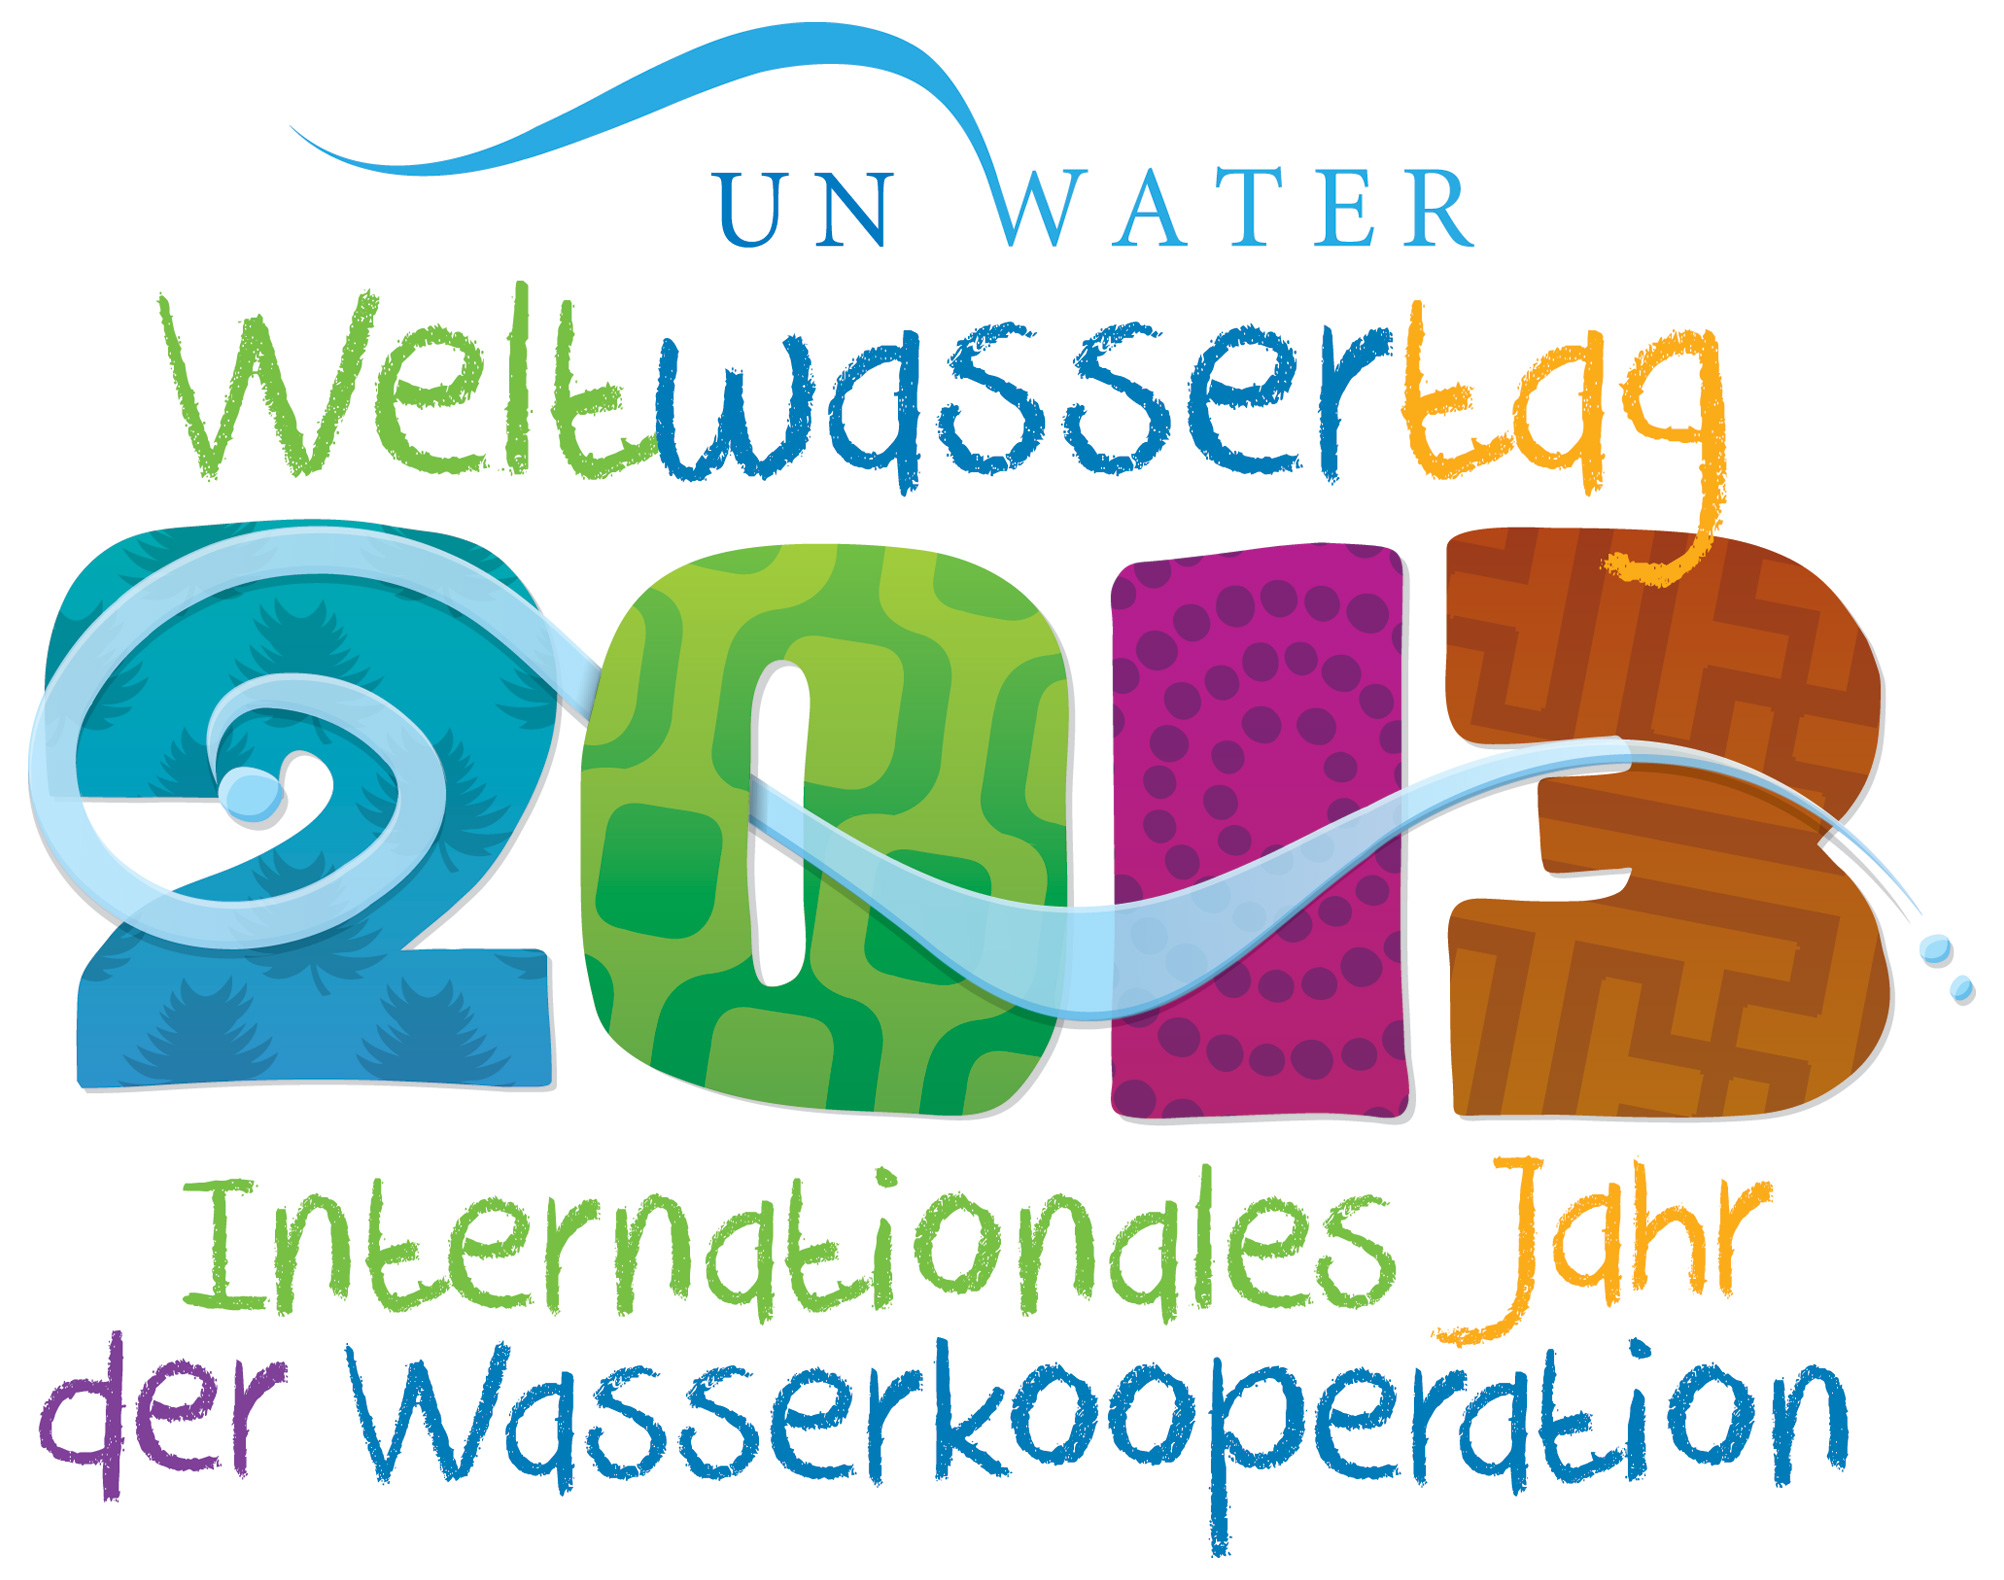 Auf dem Bild ist das Logo vom Weltwassertag im Jahr 2013 zu sehen. Auf dem Bild stehen die Wörter: UN Water, Weltwassertag 2013, Internationales Jahr der Wasserkooperation